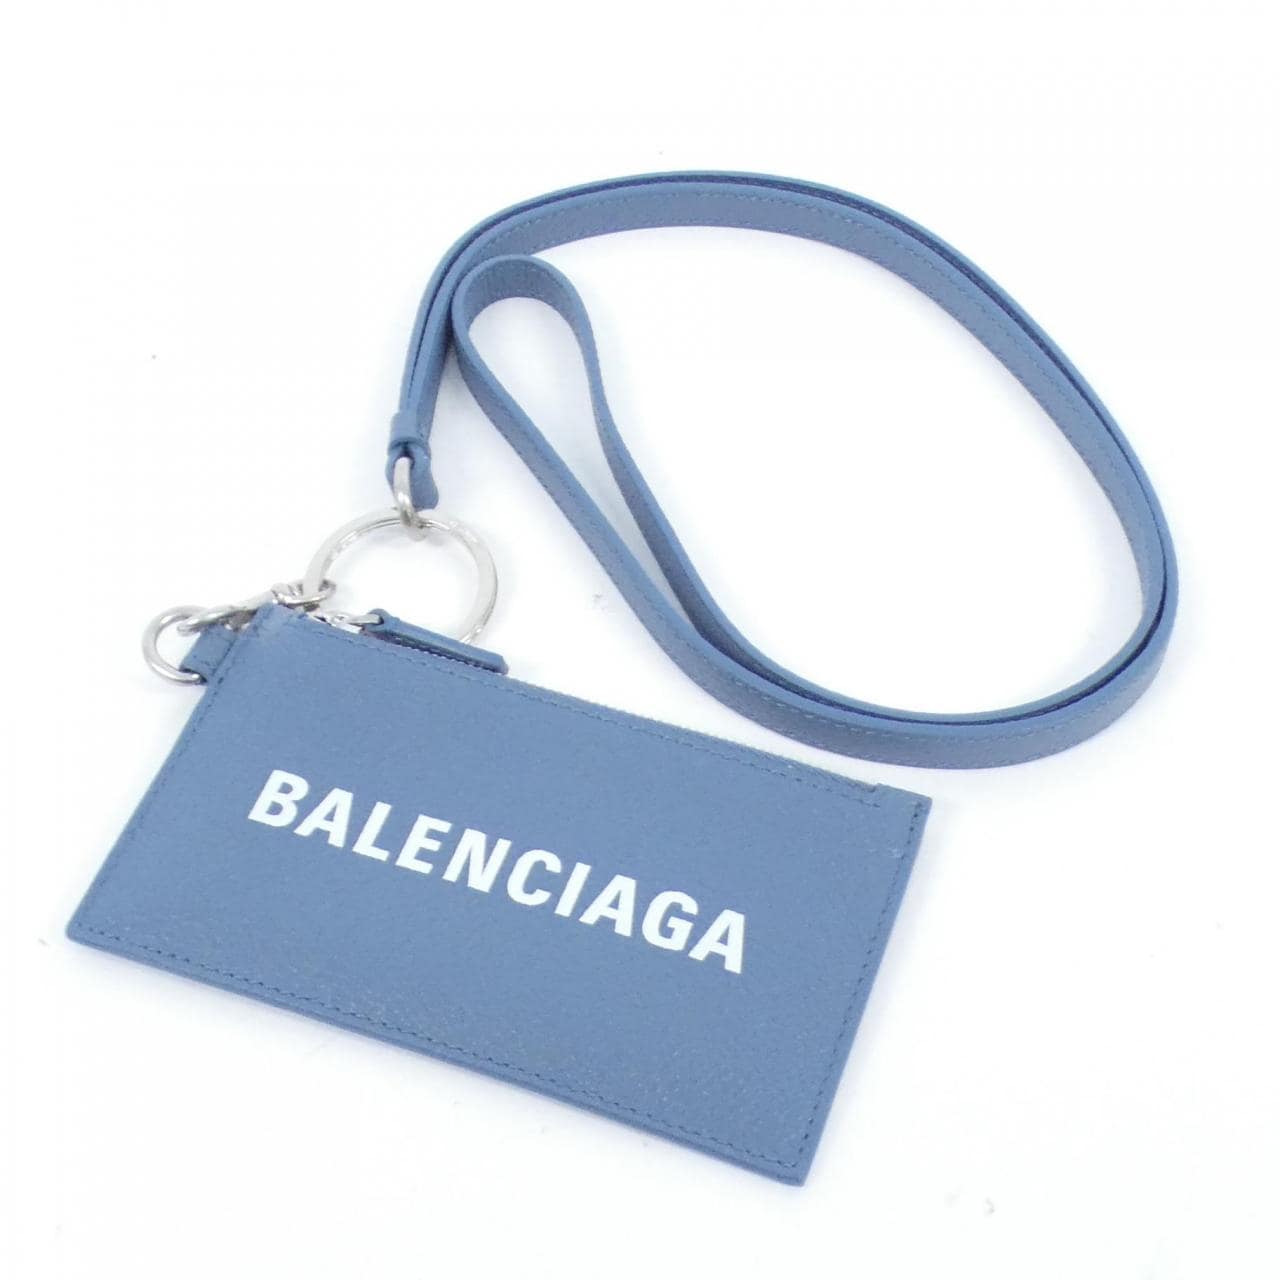 [BRAND NEW] BALENCIAGA Cash Card Case On Qeelin 594548 1IZI3 INCASE